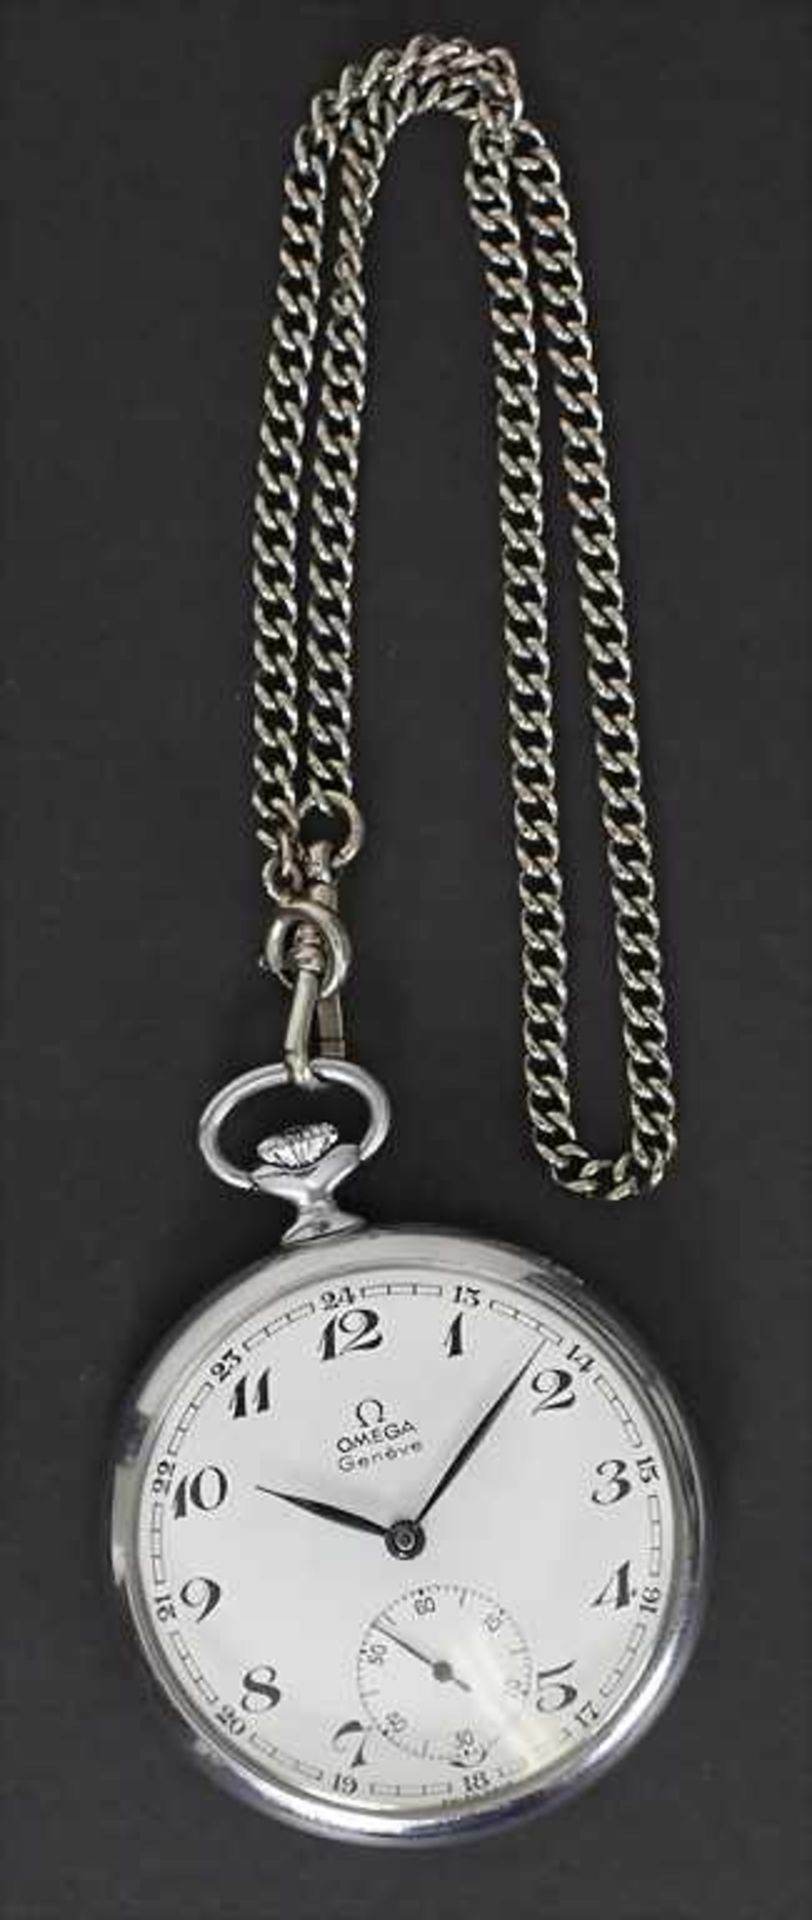 Offene Taschenuhr /A pocket watch, Omega, Schweiz/Swiss, um 1930Material: Gehäuse Stahl, Nr. 121. - Bild 3 aus 5